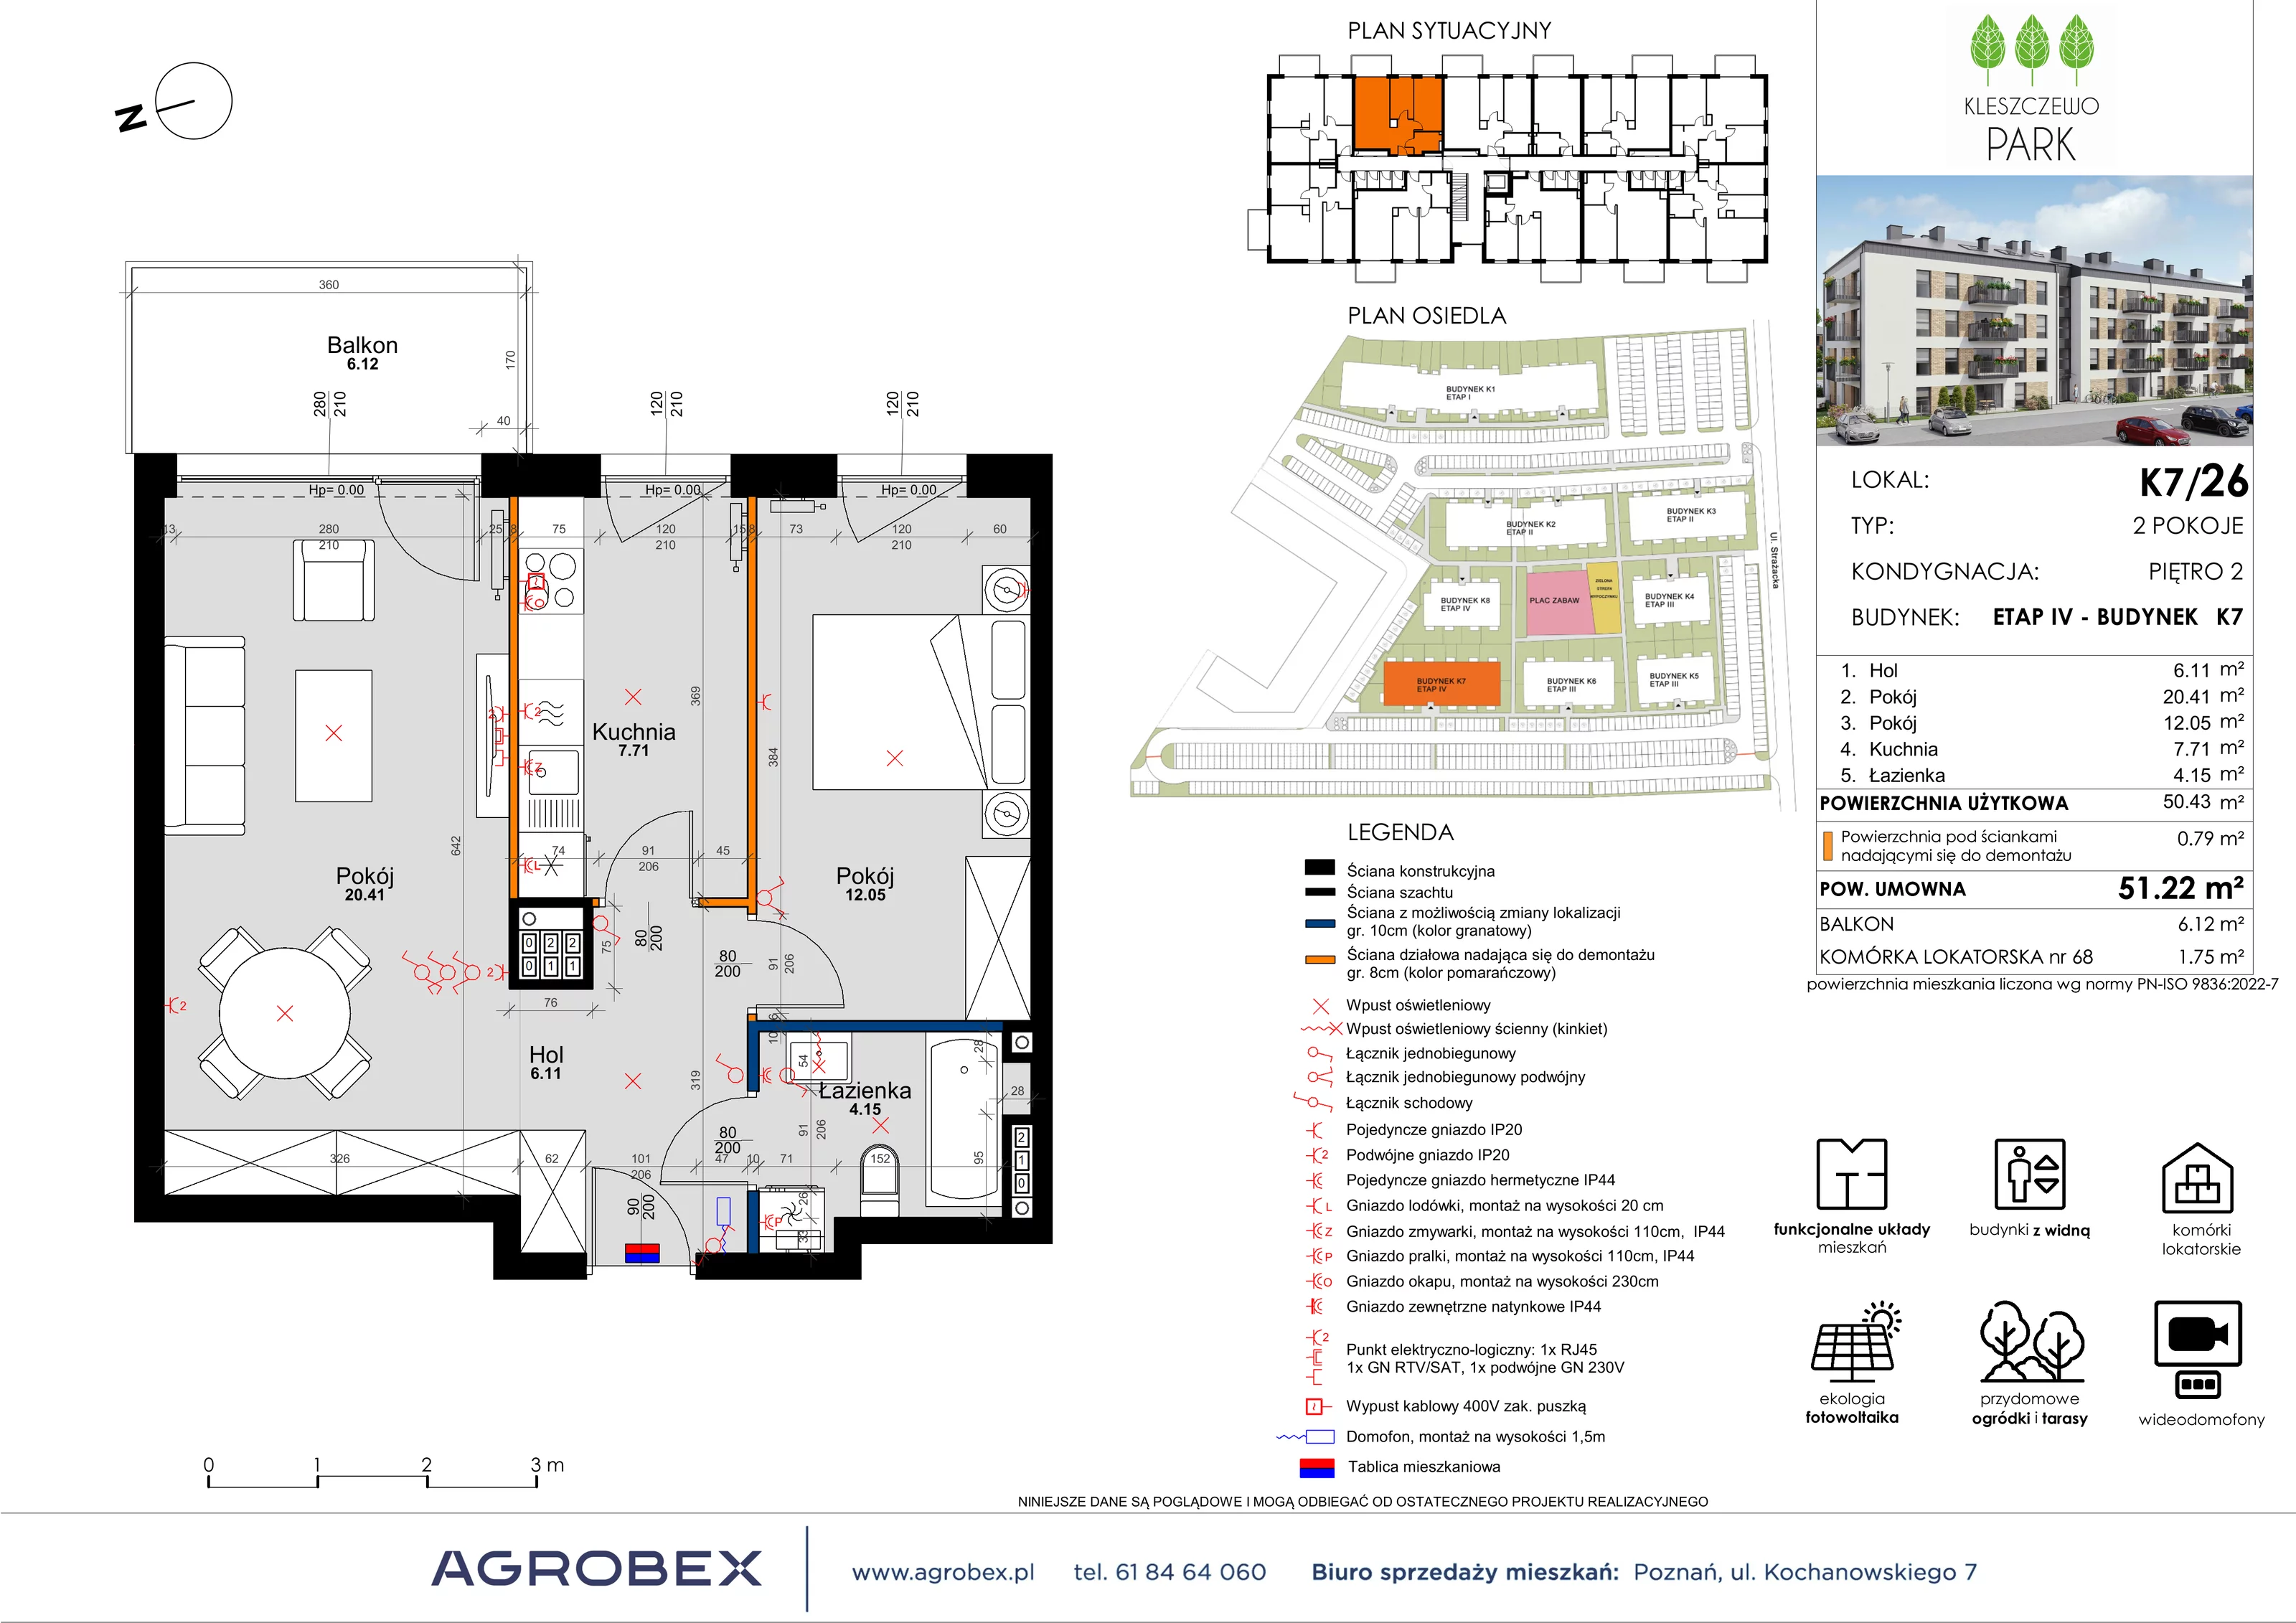 Mieszkanie 51,21 m², piętro 2, oferta nr K7/26, Kleszczewo Park, Kleszczewo, ul. Wiesławy Szymborskiej 1